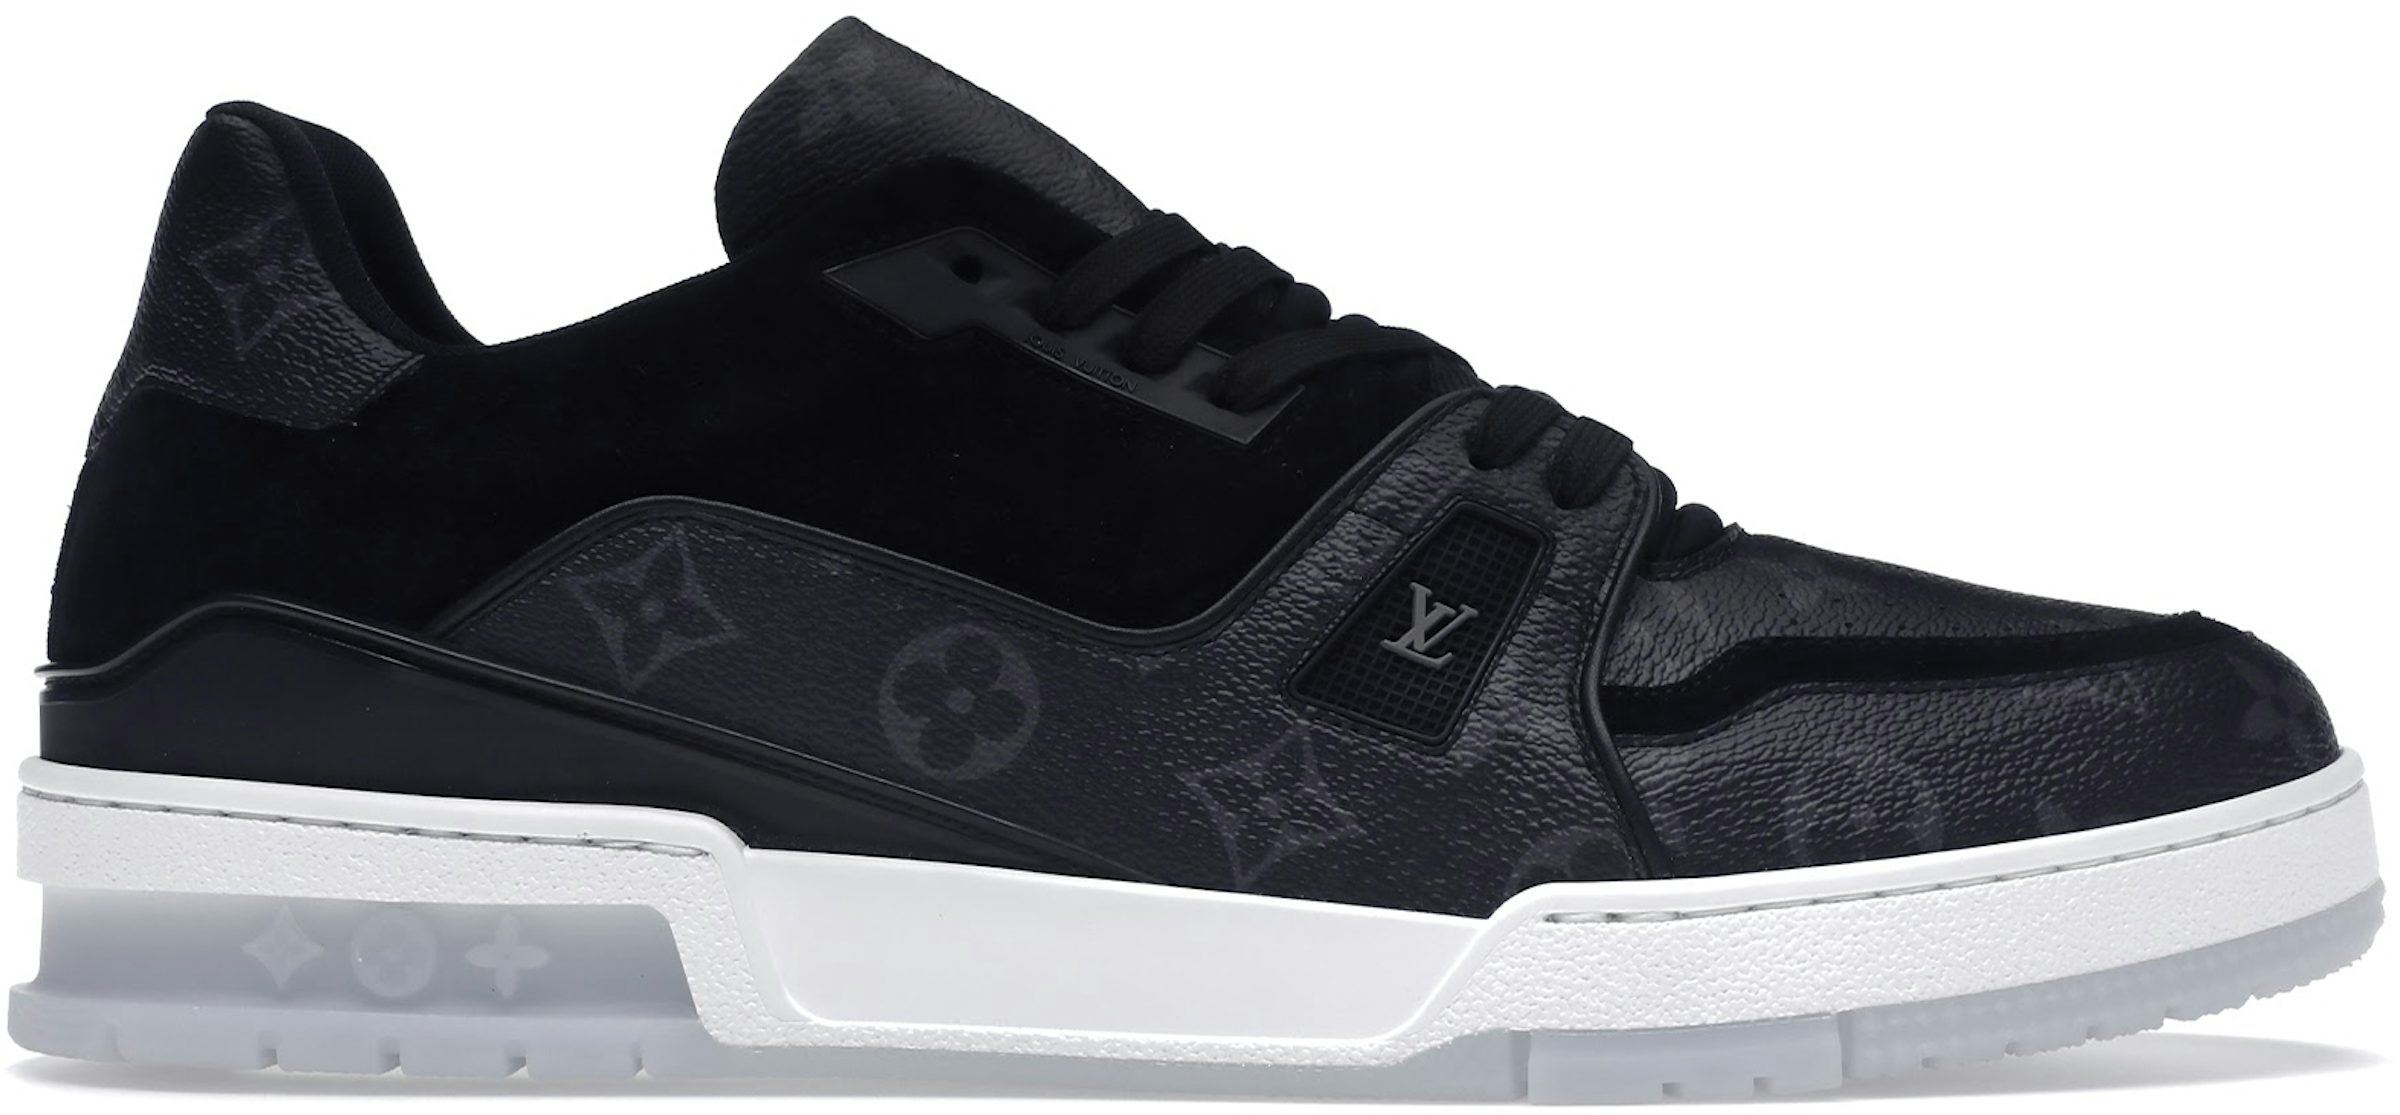 Louis Vuitton LV Trainer Sneaker BLACK. Size 08.0